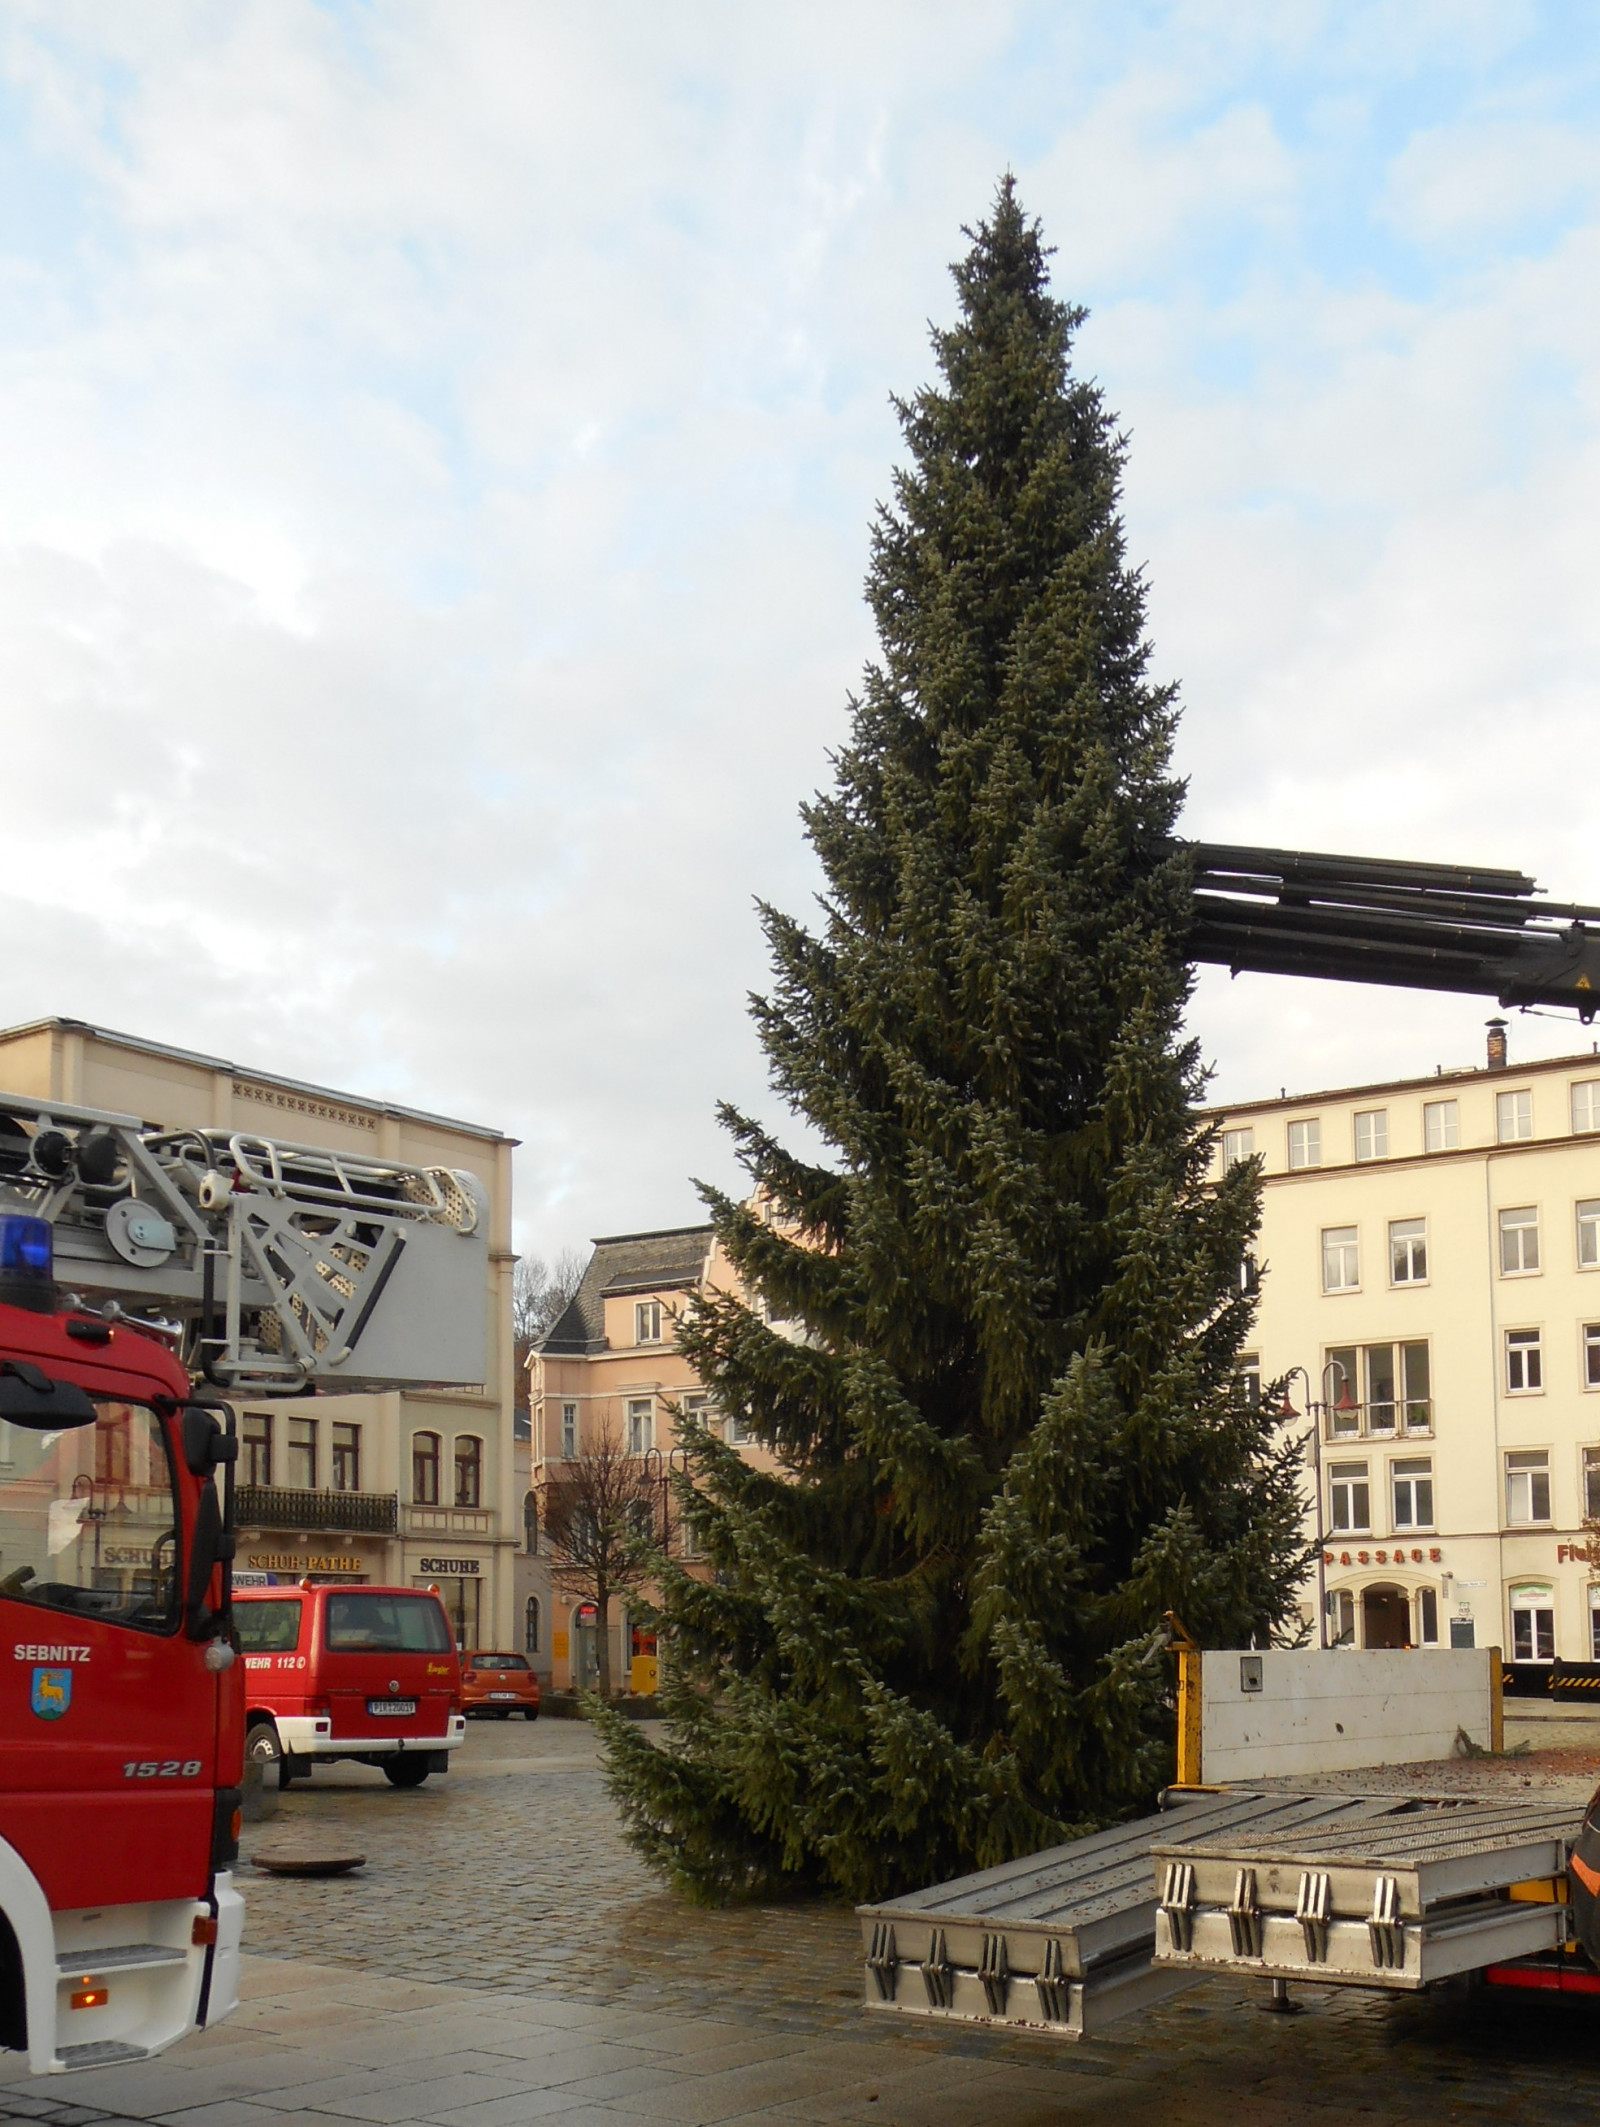 Weihnachtsbaum Markt 2020